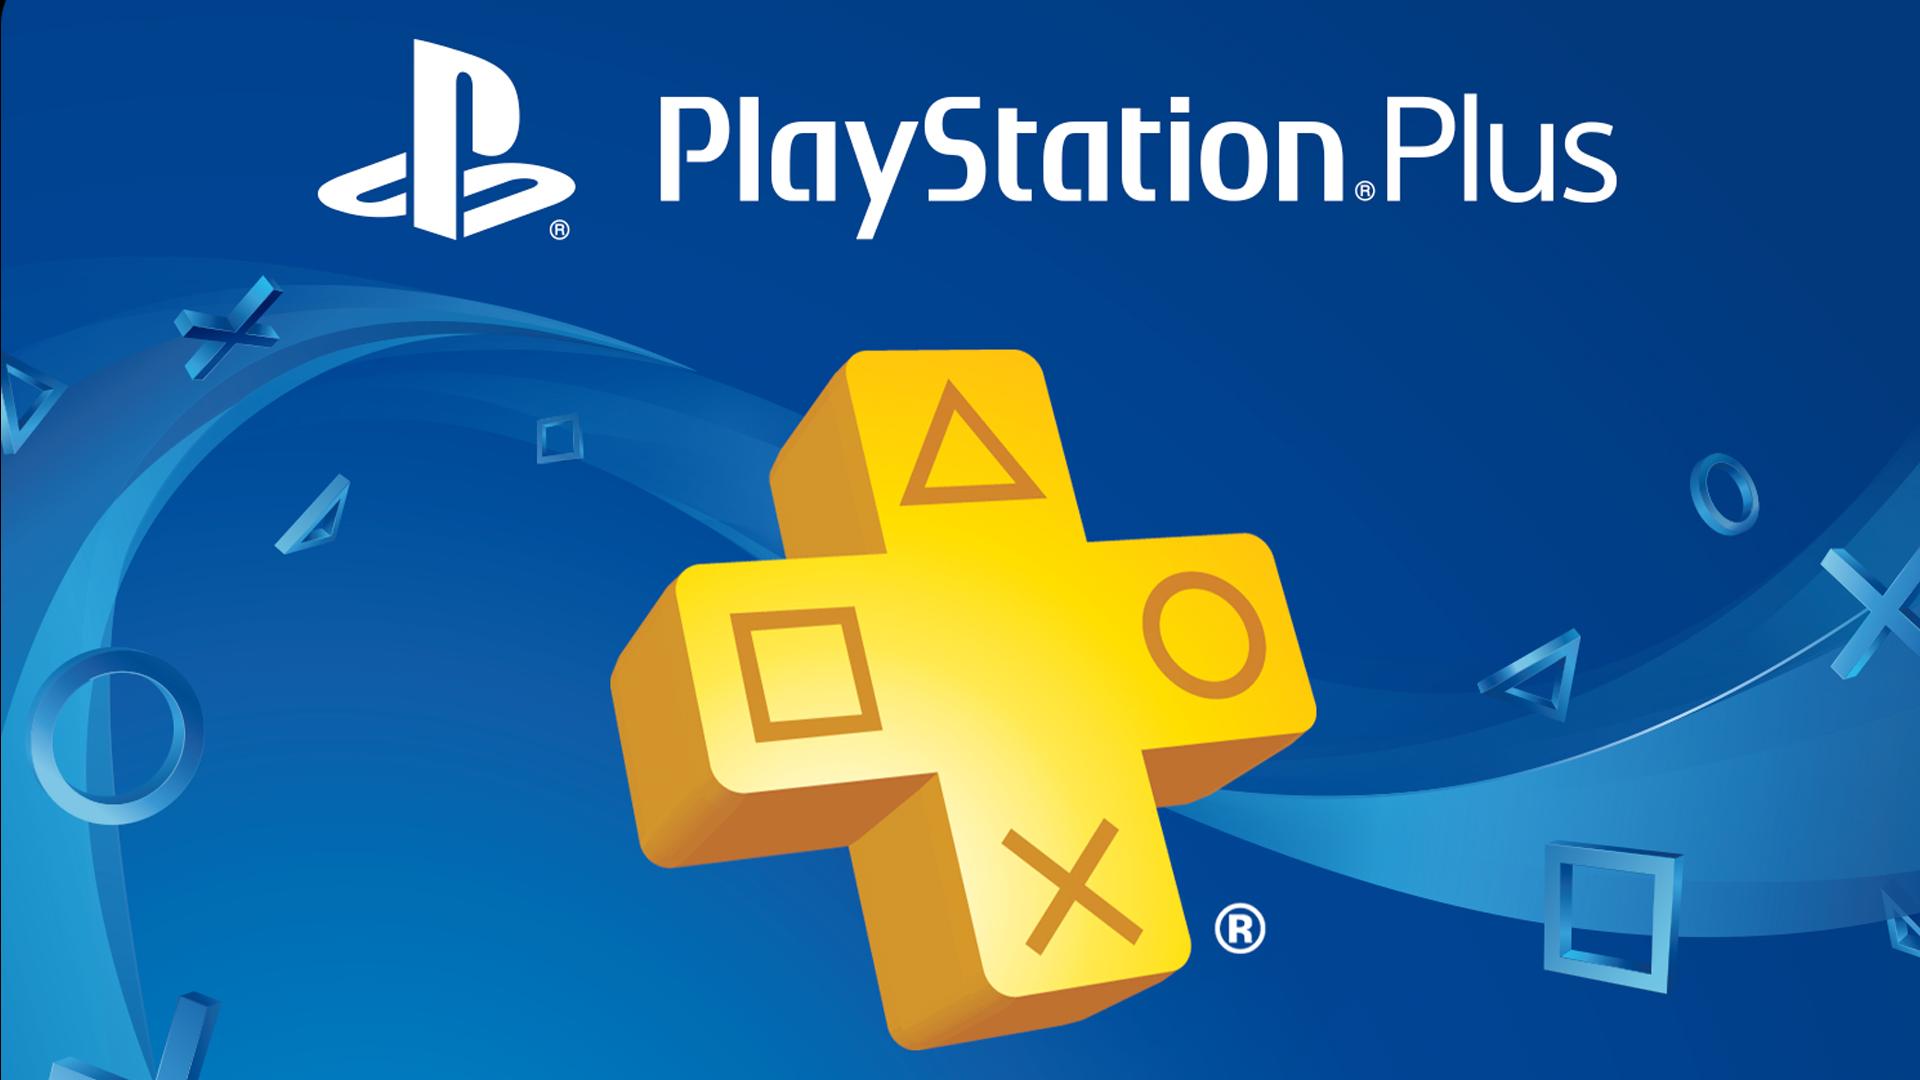 Kupno PlayStation Plus pozwala grać w trybie wieloosobowym. - PlayStation Plus za 180 zł - promocja na roczną subskrypcję usługi - wiadomość - 2019-03-14